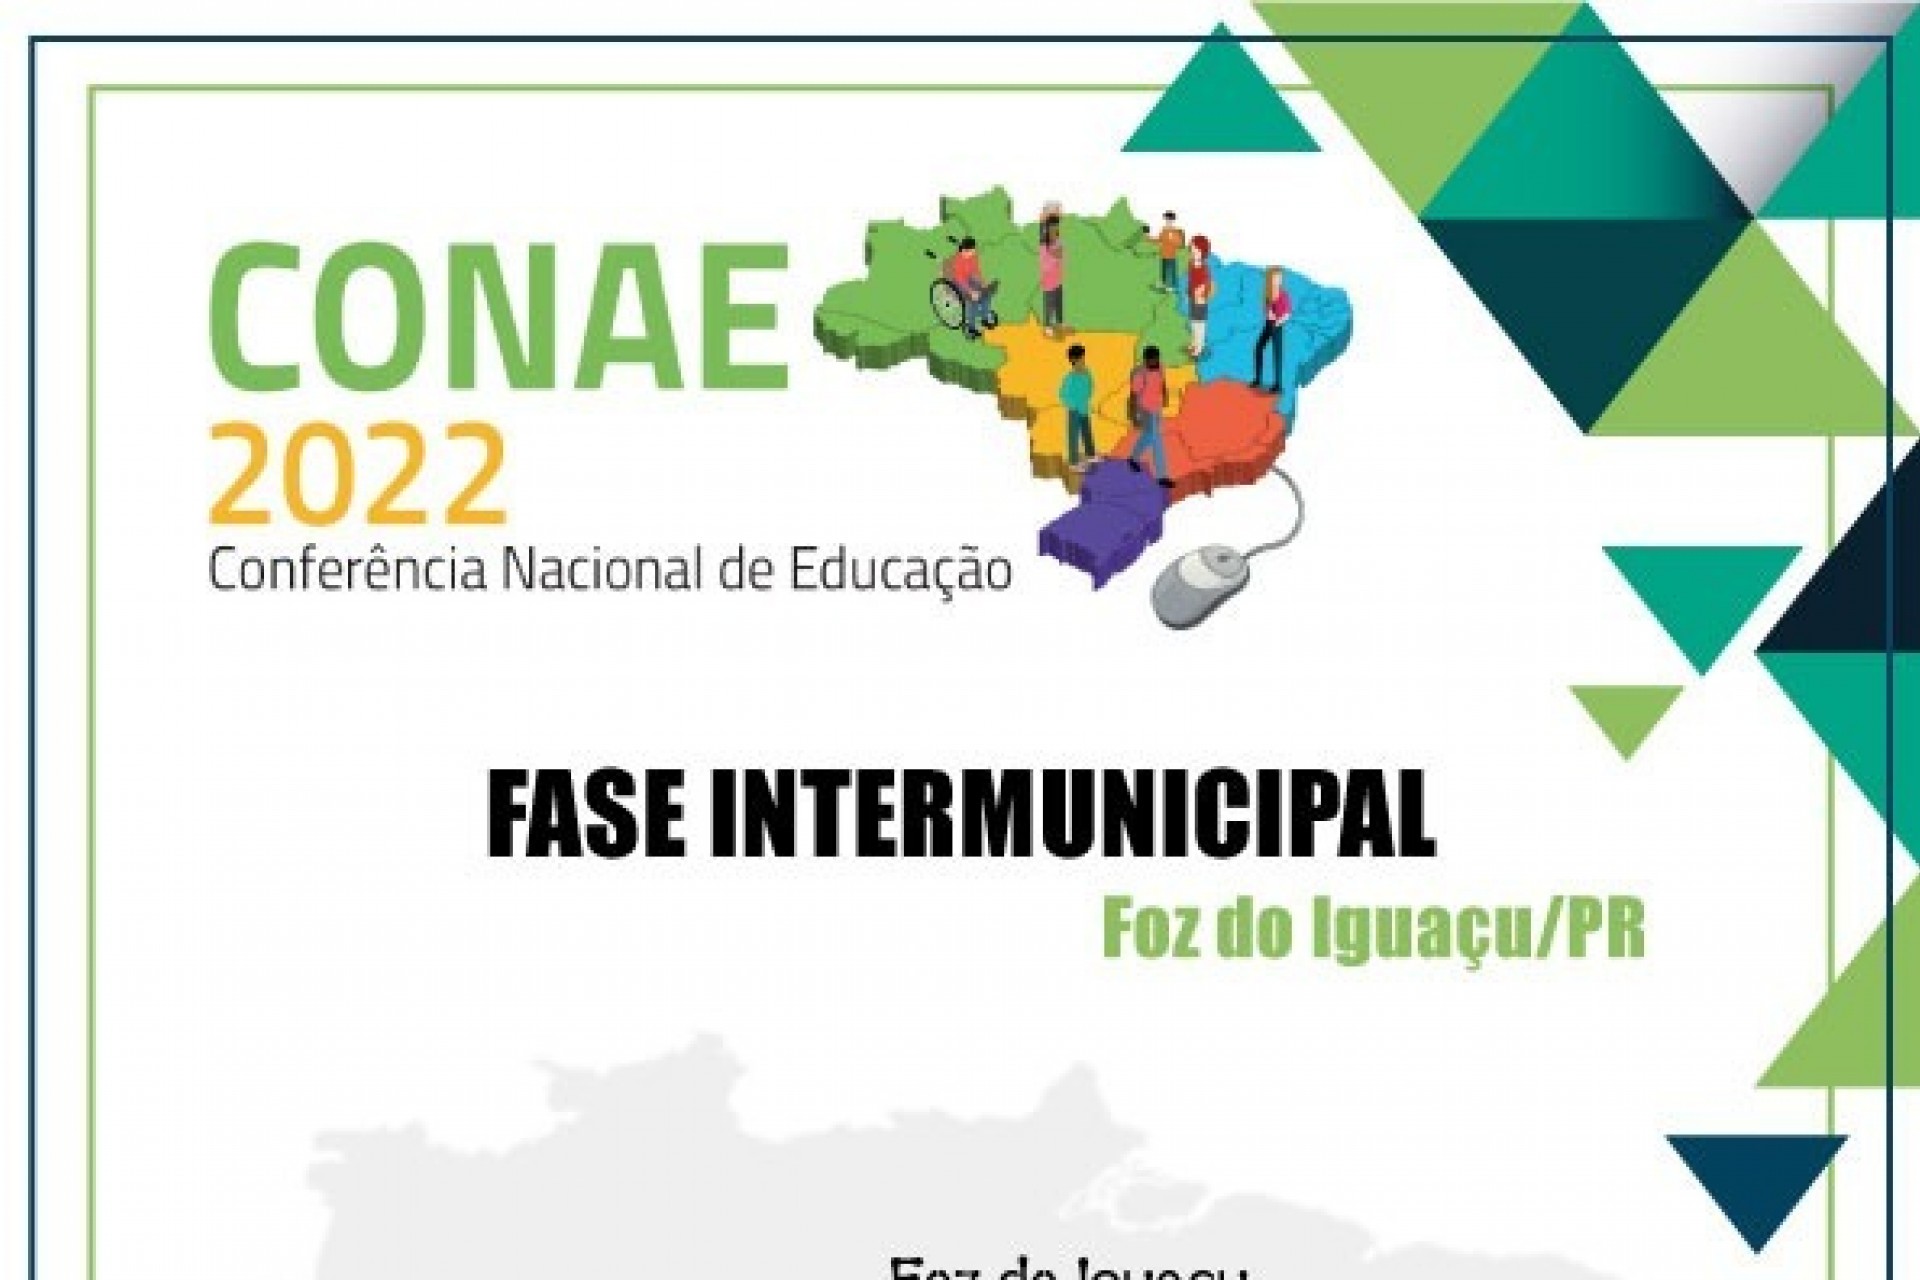 Conferências da Educação que antecedem o CONAE 2022 ocorrem esta semana de forma simultânea